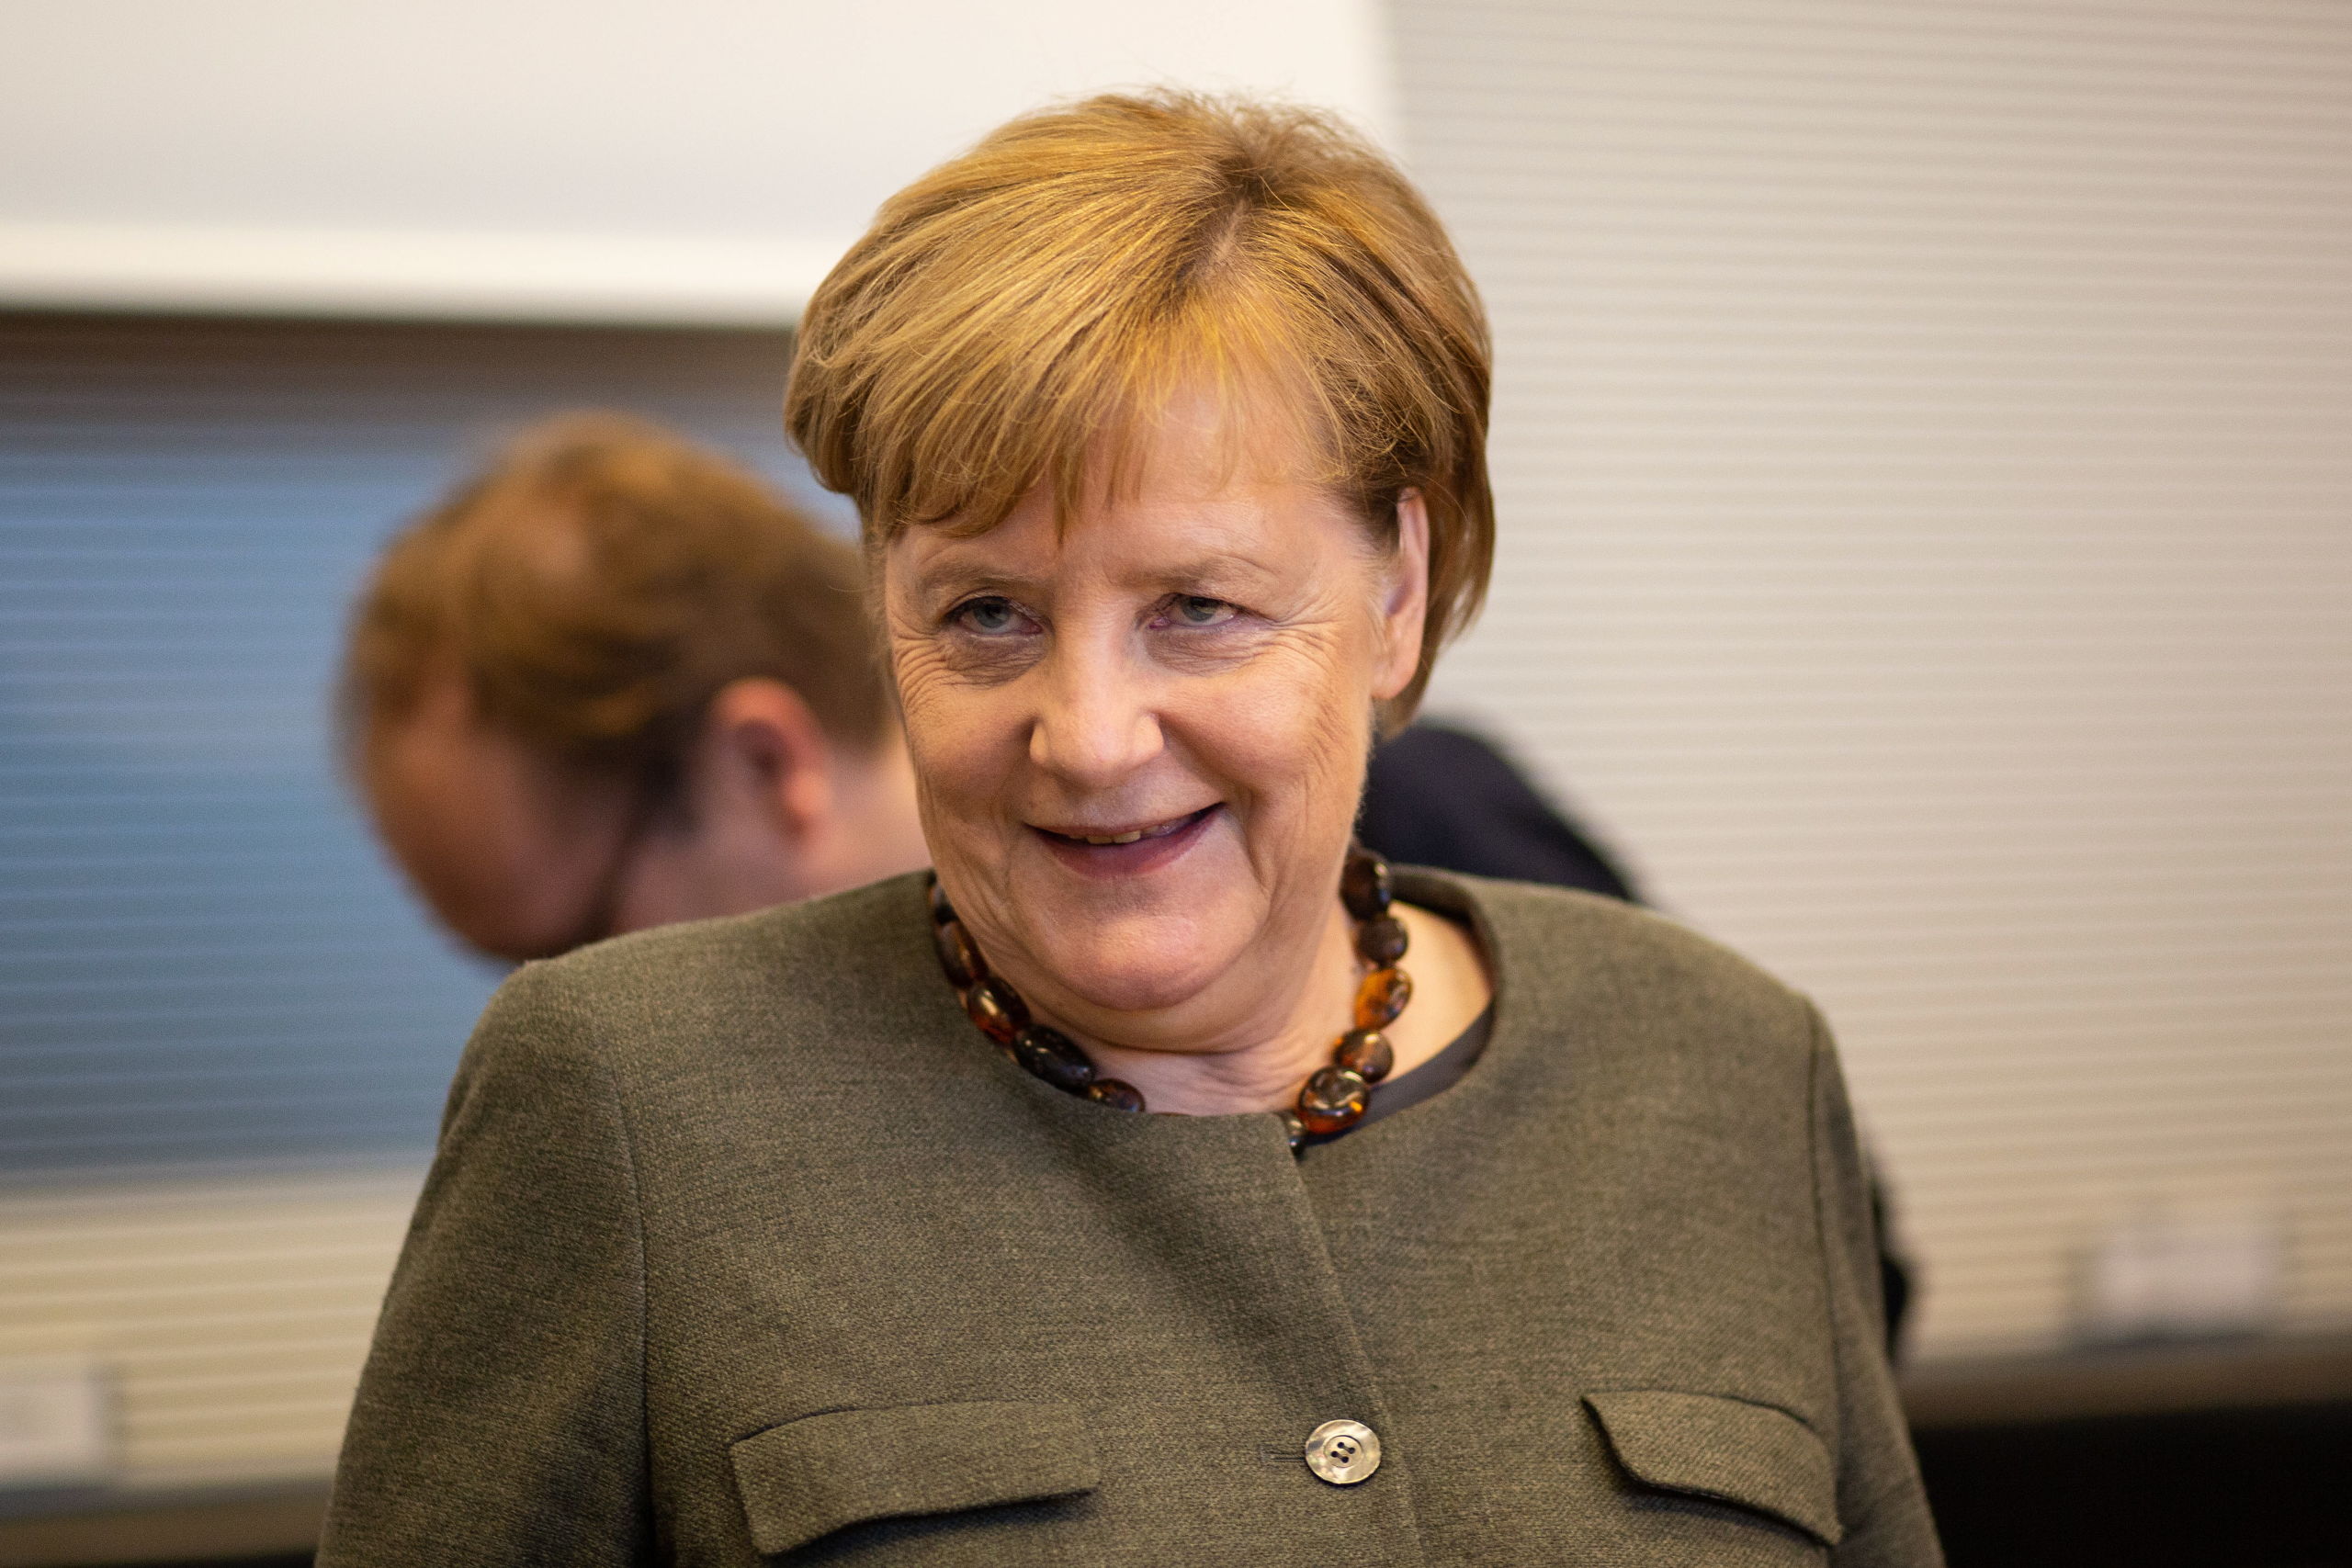 De Duitse bondskanselier Angela Merkel.